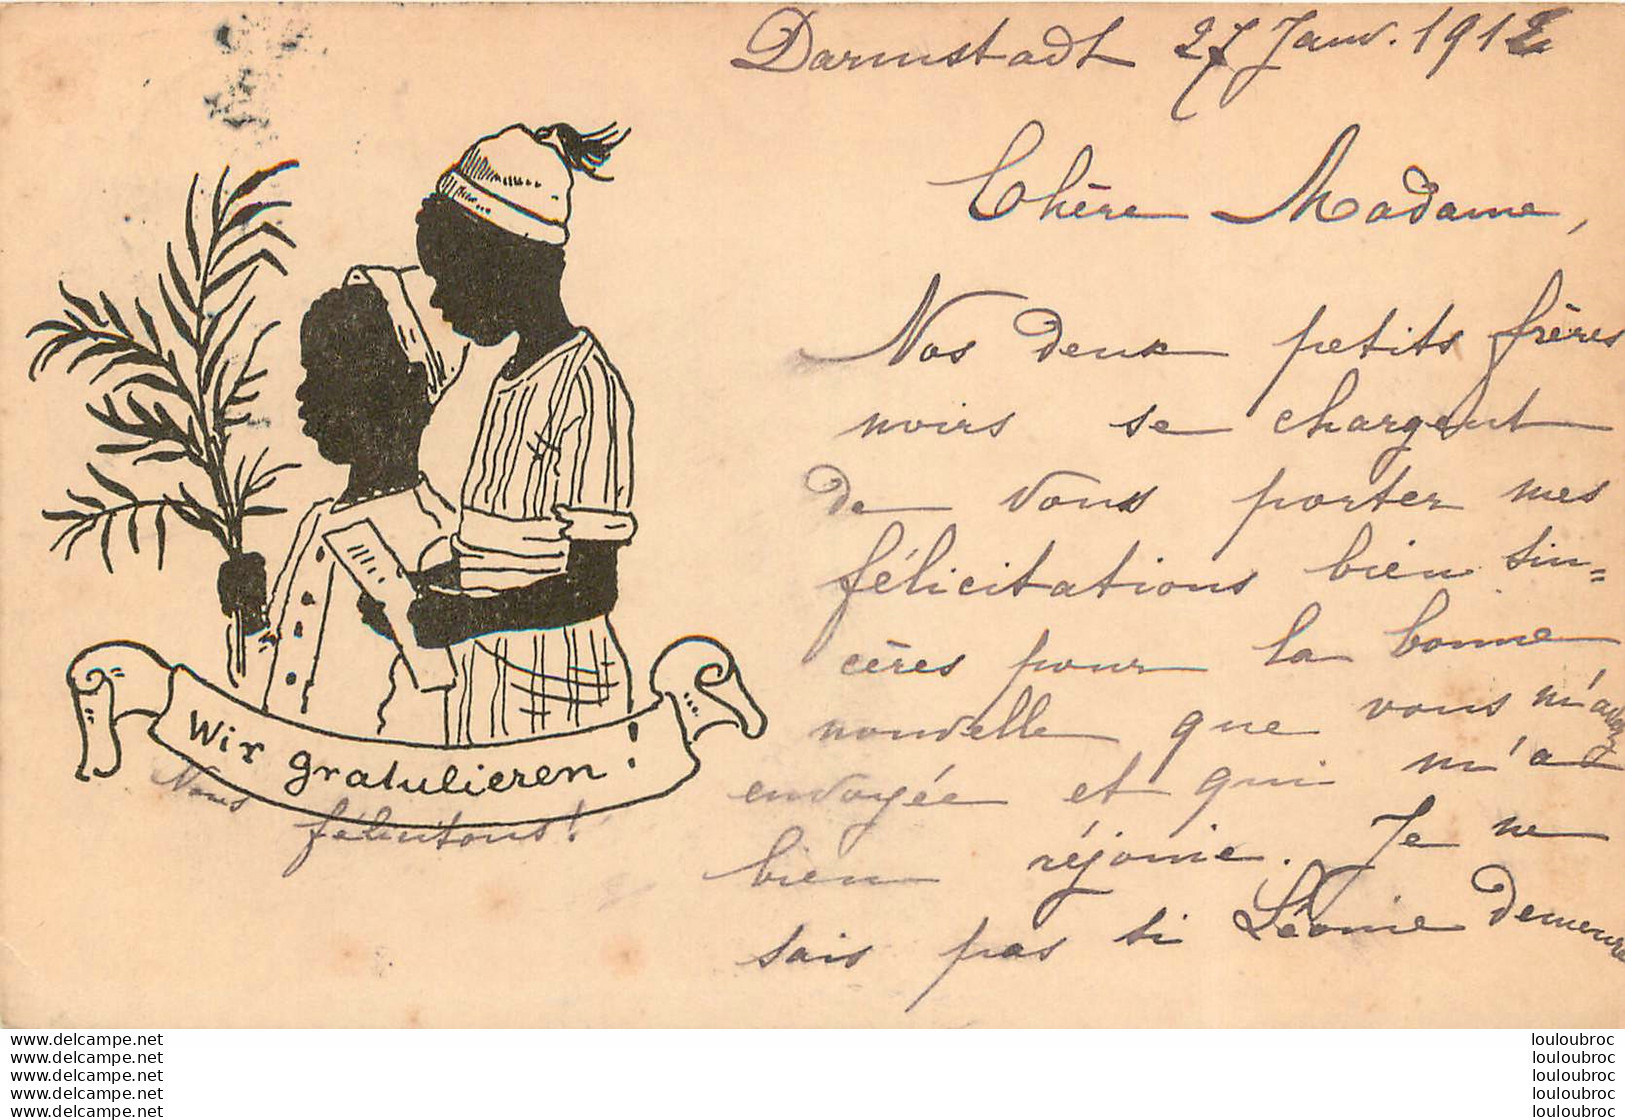 WIR GRATULIEREN NOUS FELICITONS CARTE ALLEMANDE 1912 SILHOUETTES ENFANTS AFRIQUE - Silhouetkaarten